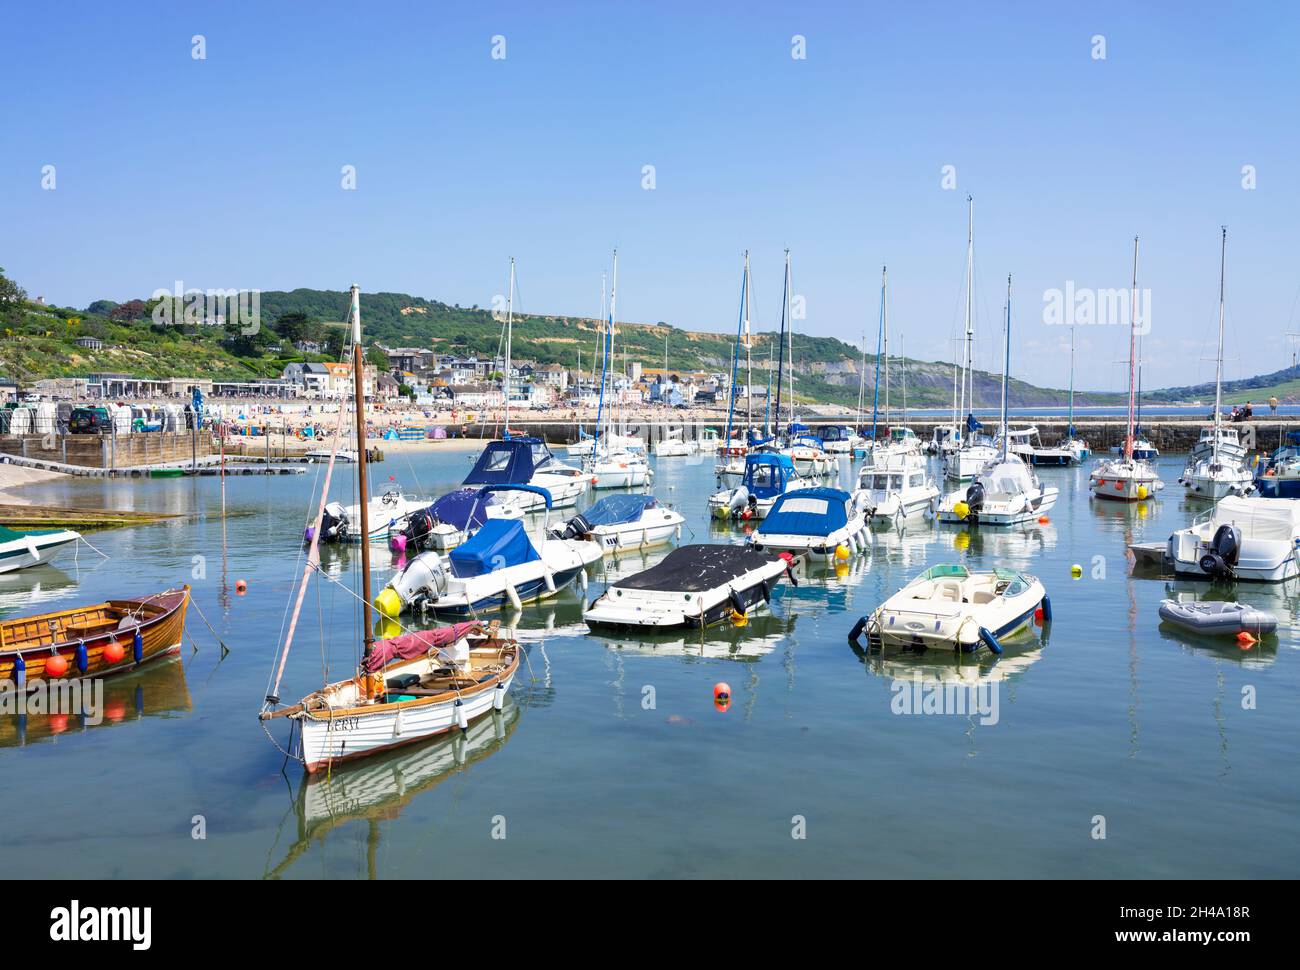 Bateaux de pêche et bateaux de plaisance dans le port de la côte jurassique à Lyme Regis Dorset Angleterre GB Europe Banque D'Images